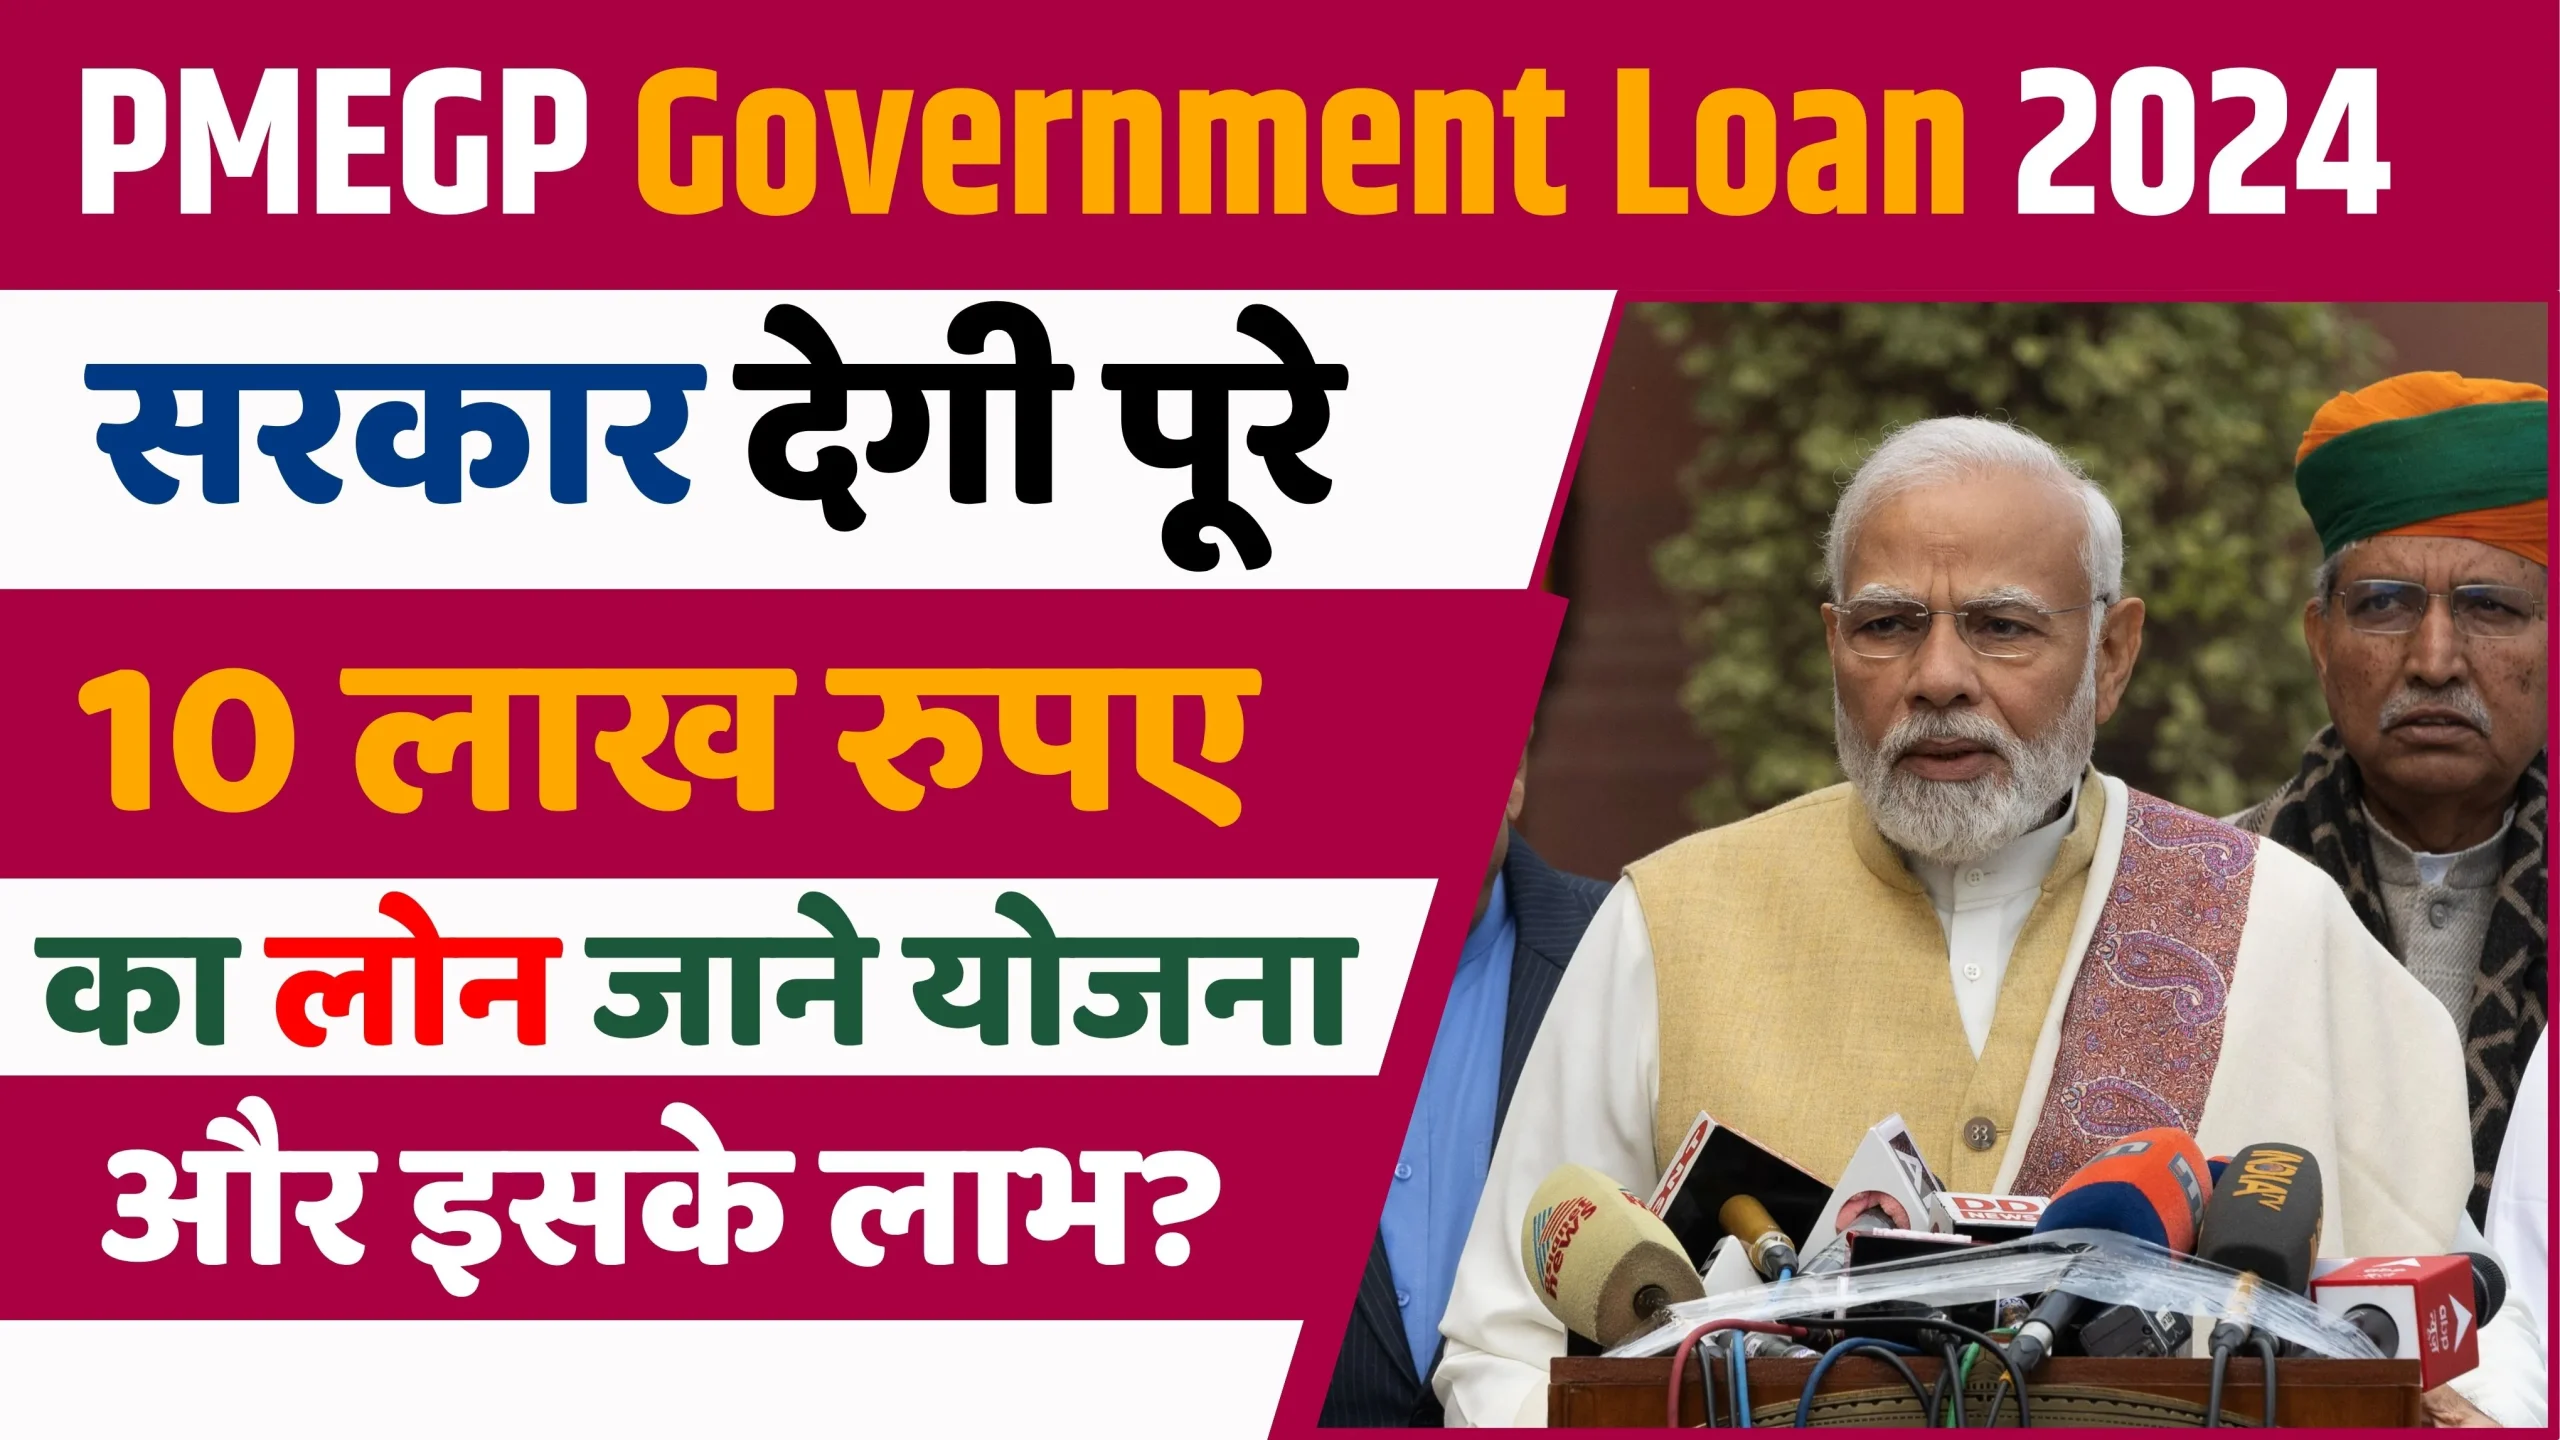 PMEGP Loan Apply 2024: सिर्फ आधार कार्ड से मिलेगा 10 लाख रुपए का लोन